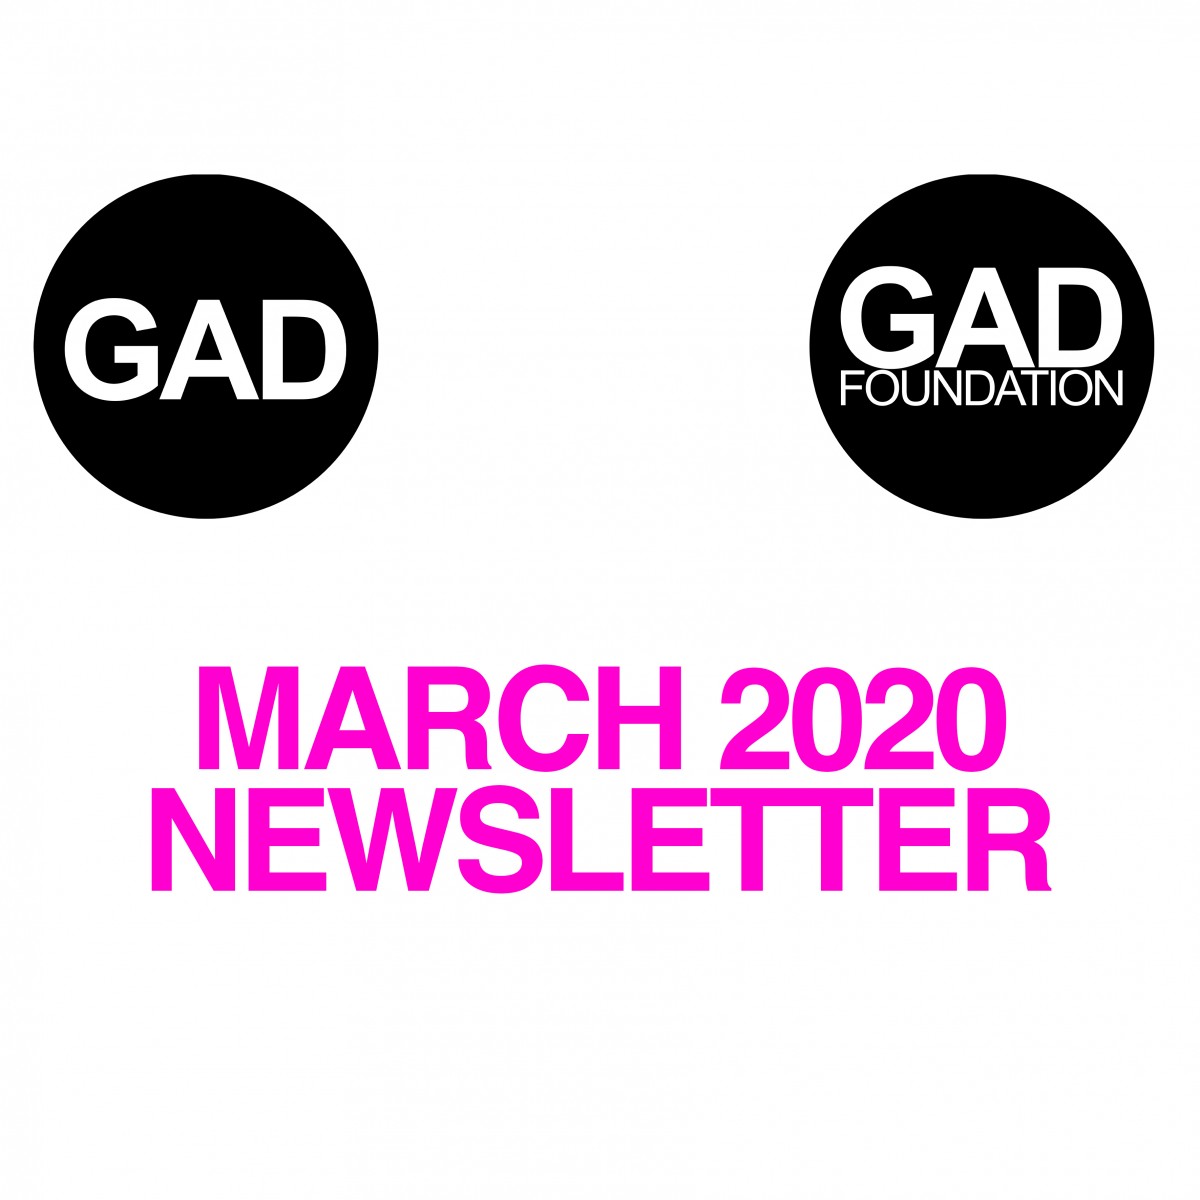 Mart 2020 Newsletter